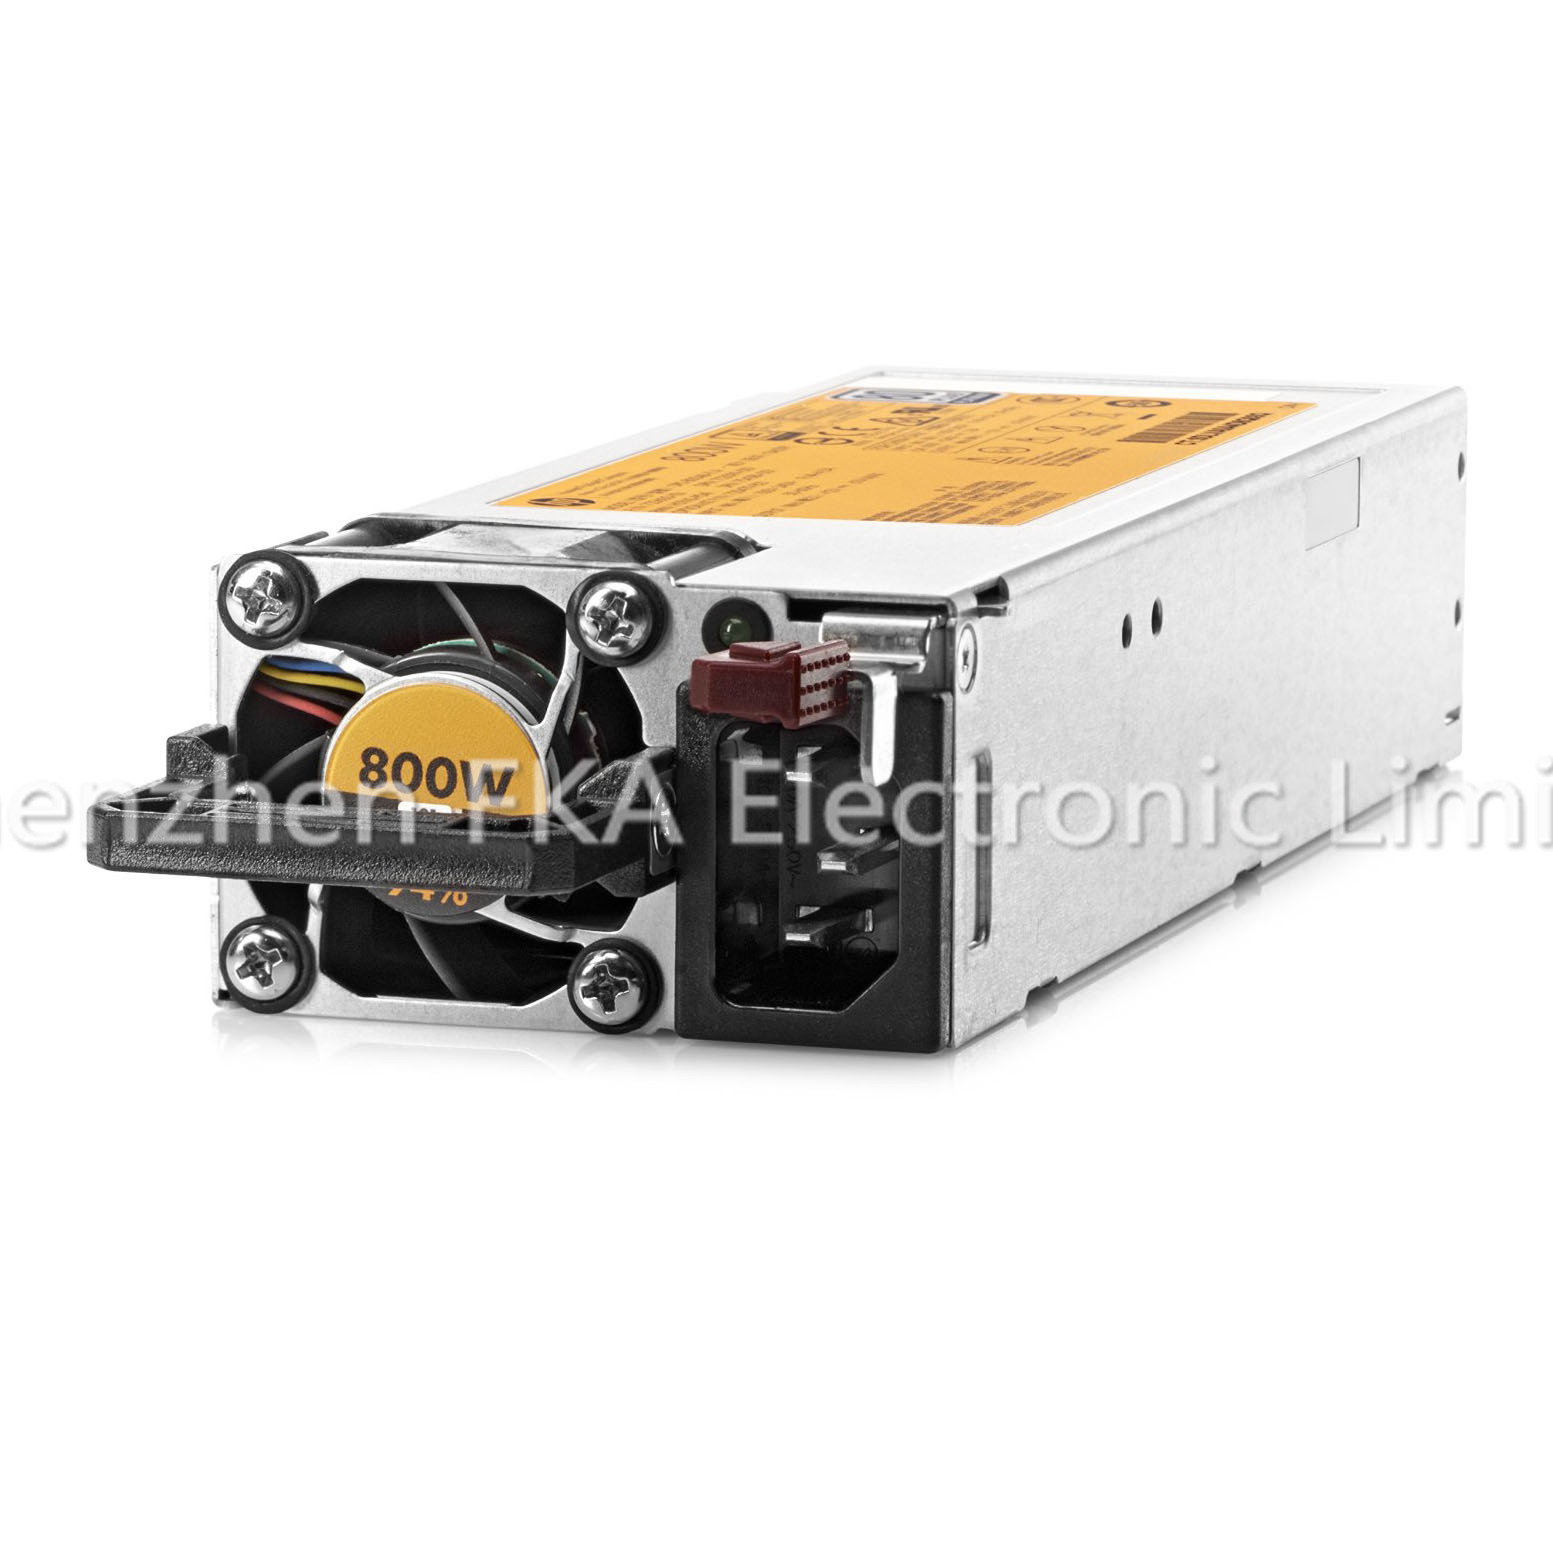 HP GEN9 800W FLEX SLOT PLATINUM 720479-B21 754381-001 800W Power Supply